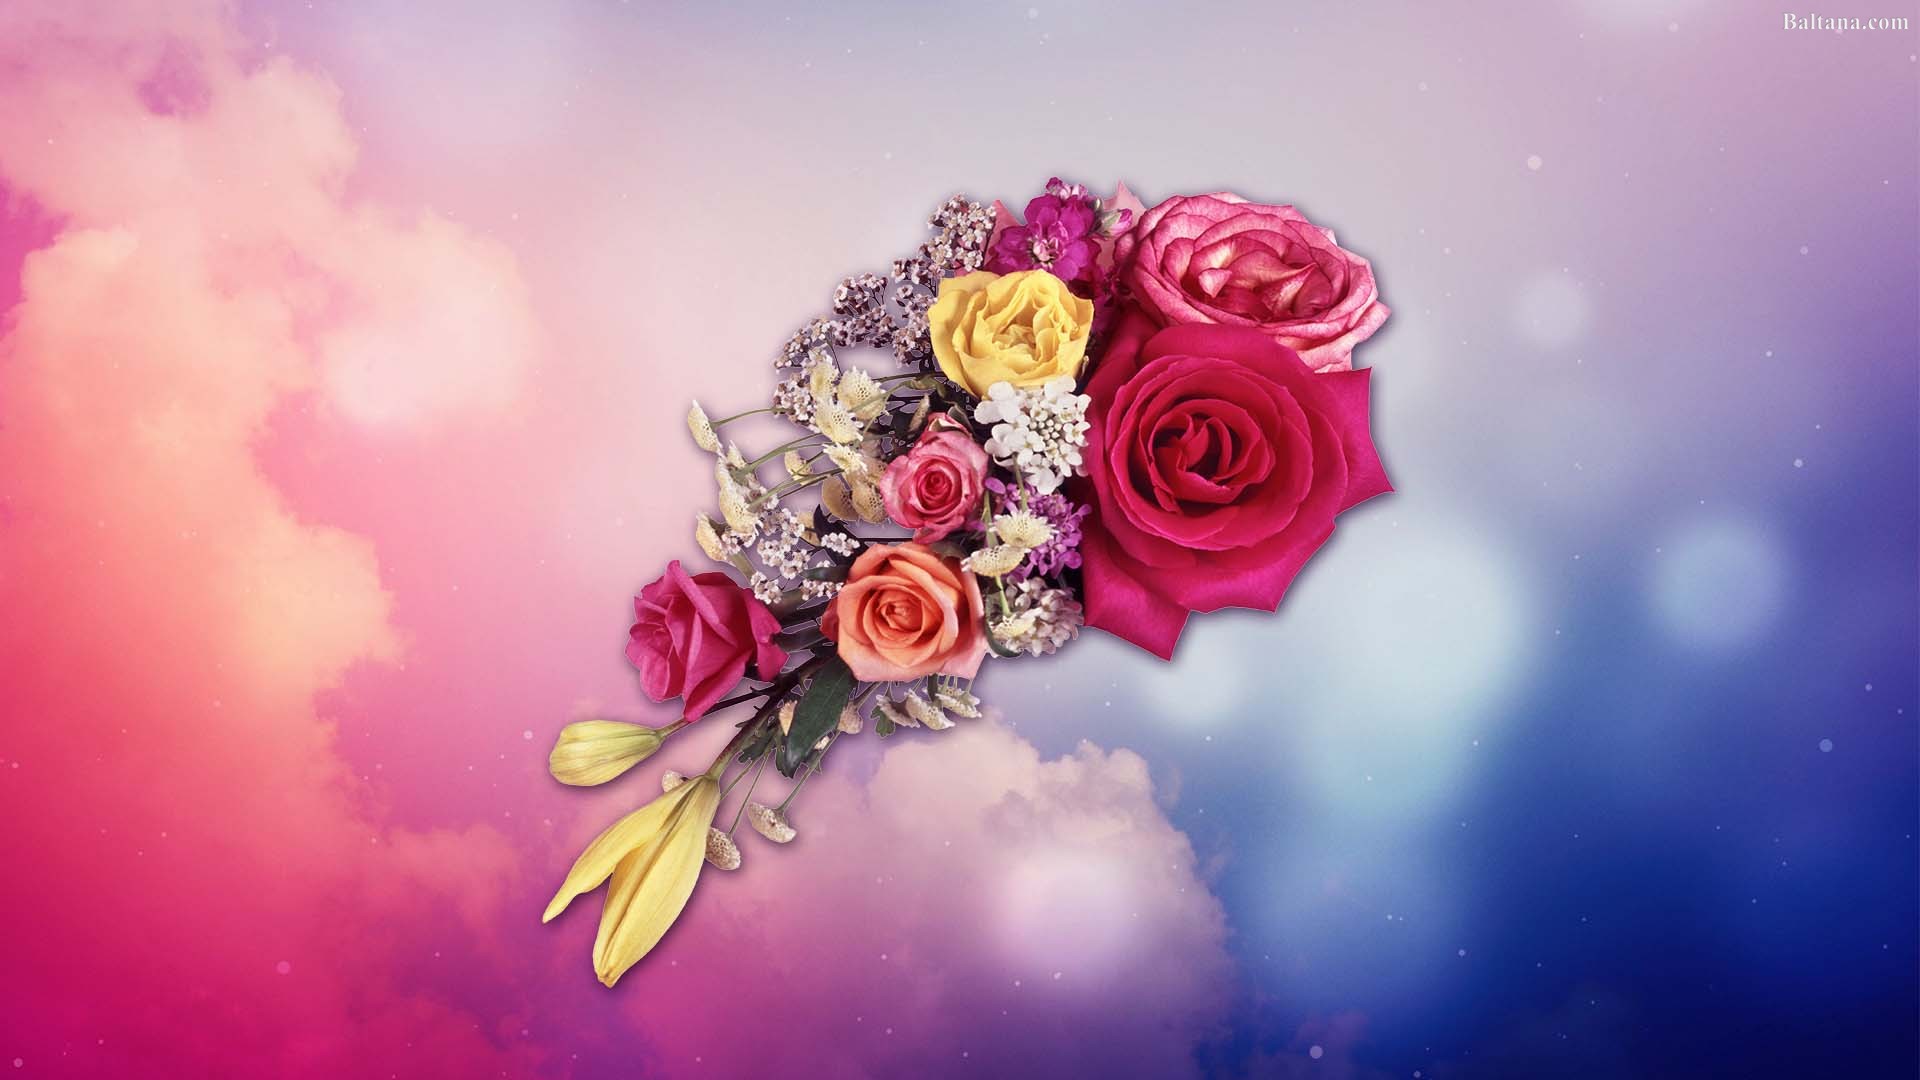 Flower Bouquet Wallpaper - Garden Roses - HD Wallpaper 